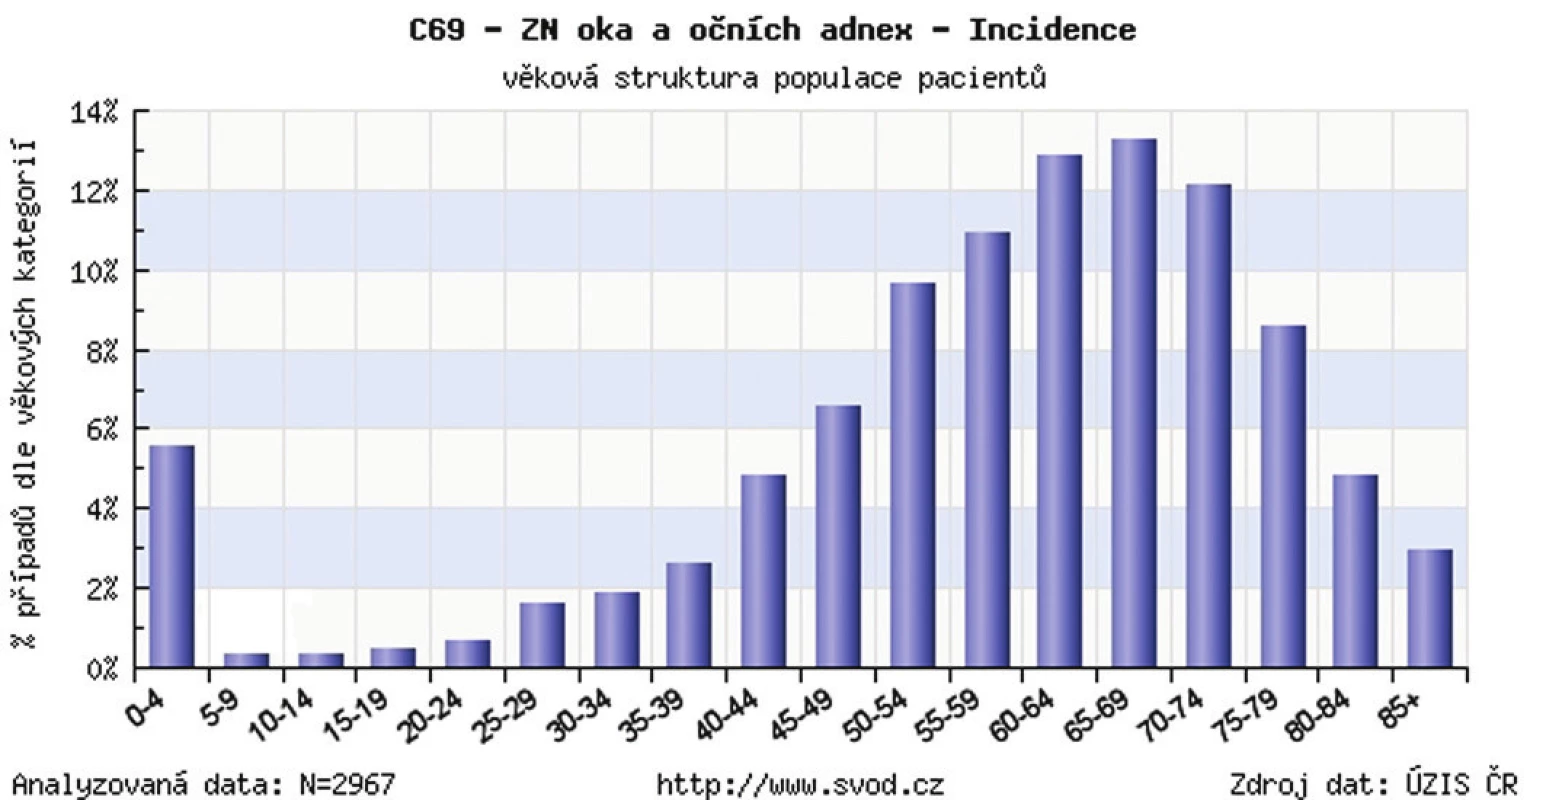 Zhubný nádor oka a adnex v ČR – veková štruktúra populácie pacientov v r. 1977–2009